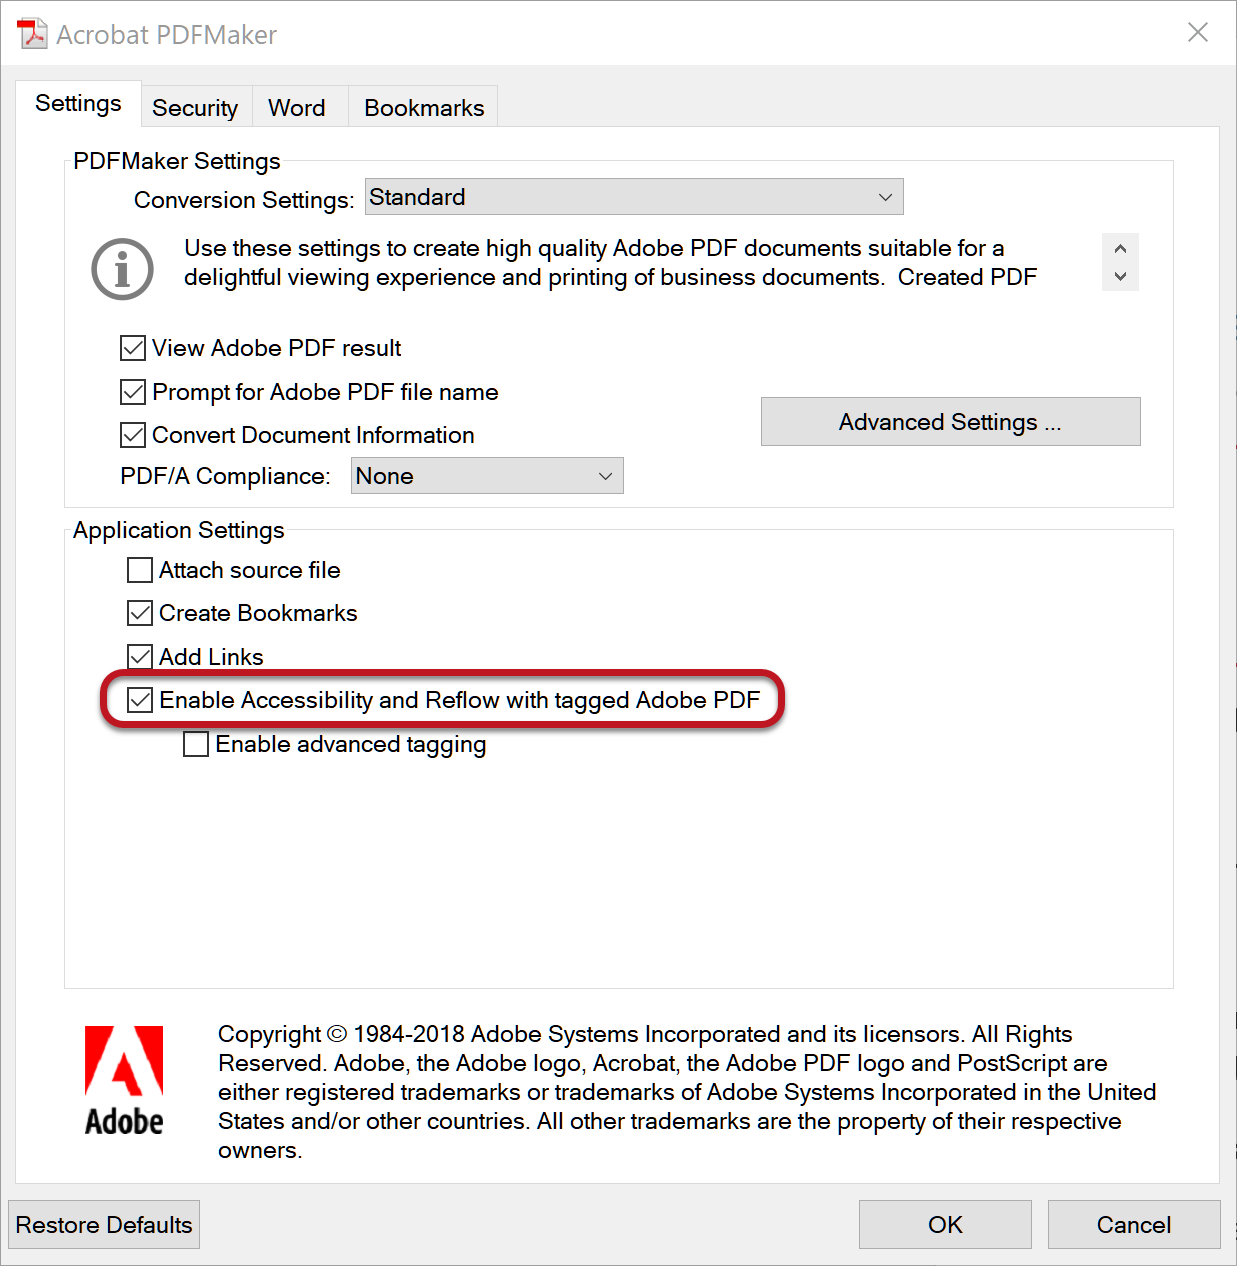 Tela do Acrobat PDFMaker com a opção marcada para Habilitar a Acessibilidade e Formatação com Adobe PDF marcado